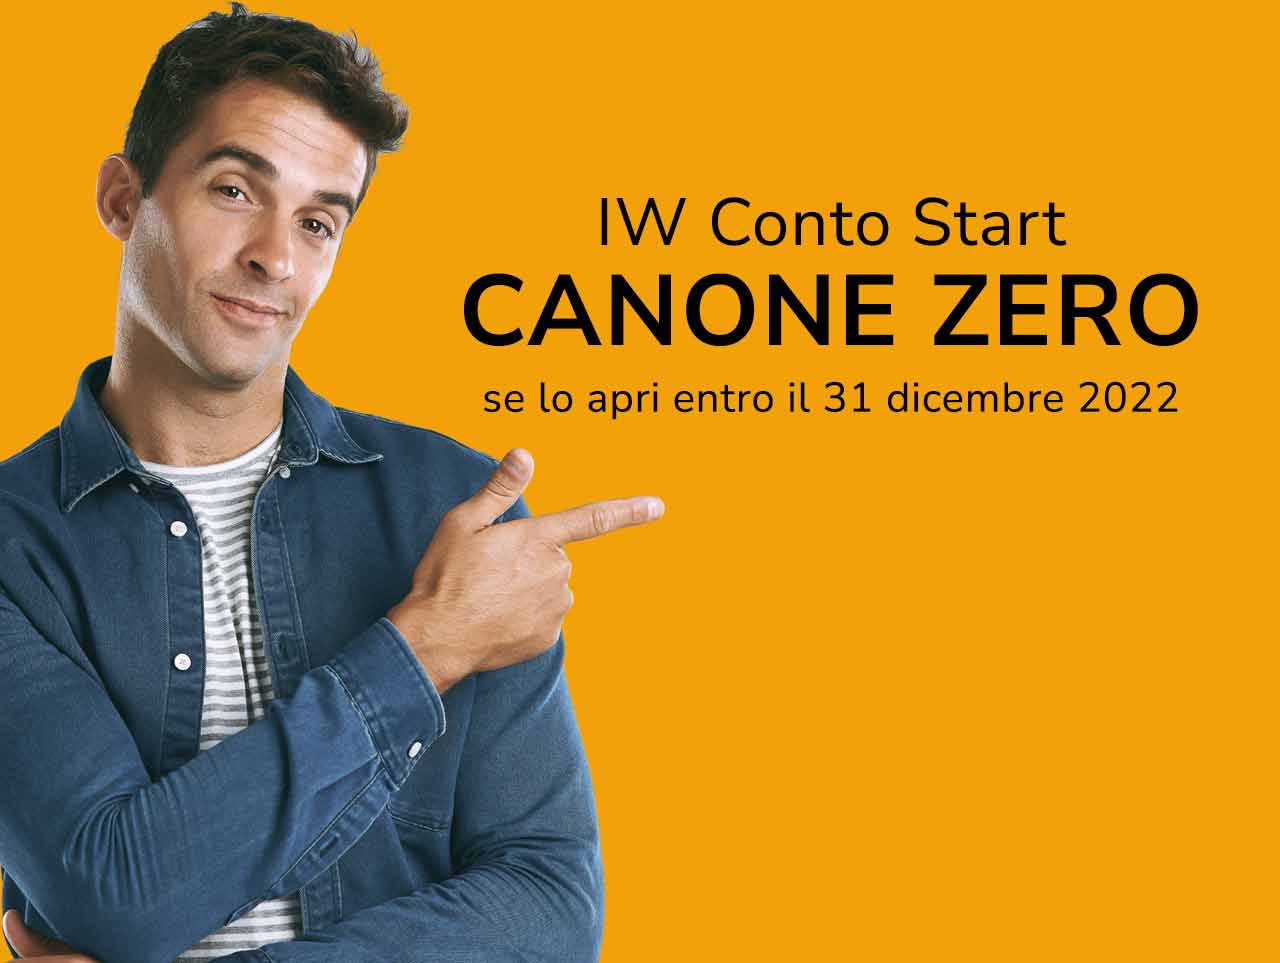 Giovane sorridente indica la scritta "IW Conto Start Canone Zero se lo apri entro il 31 dicembre 2022"